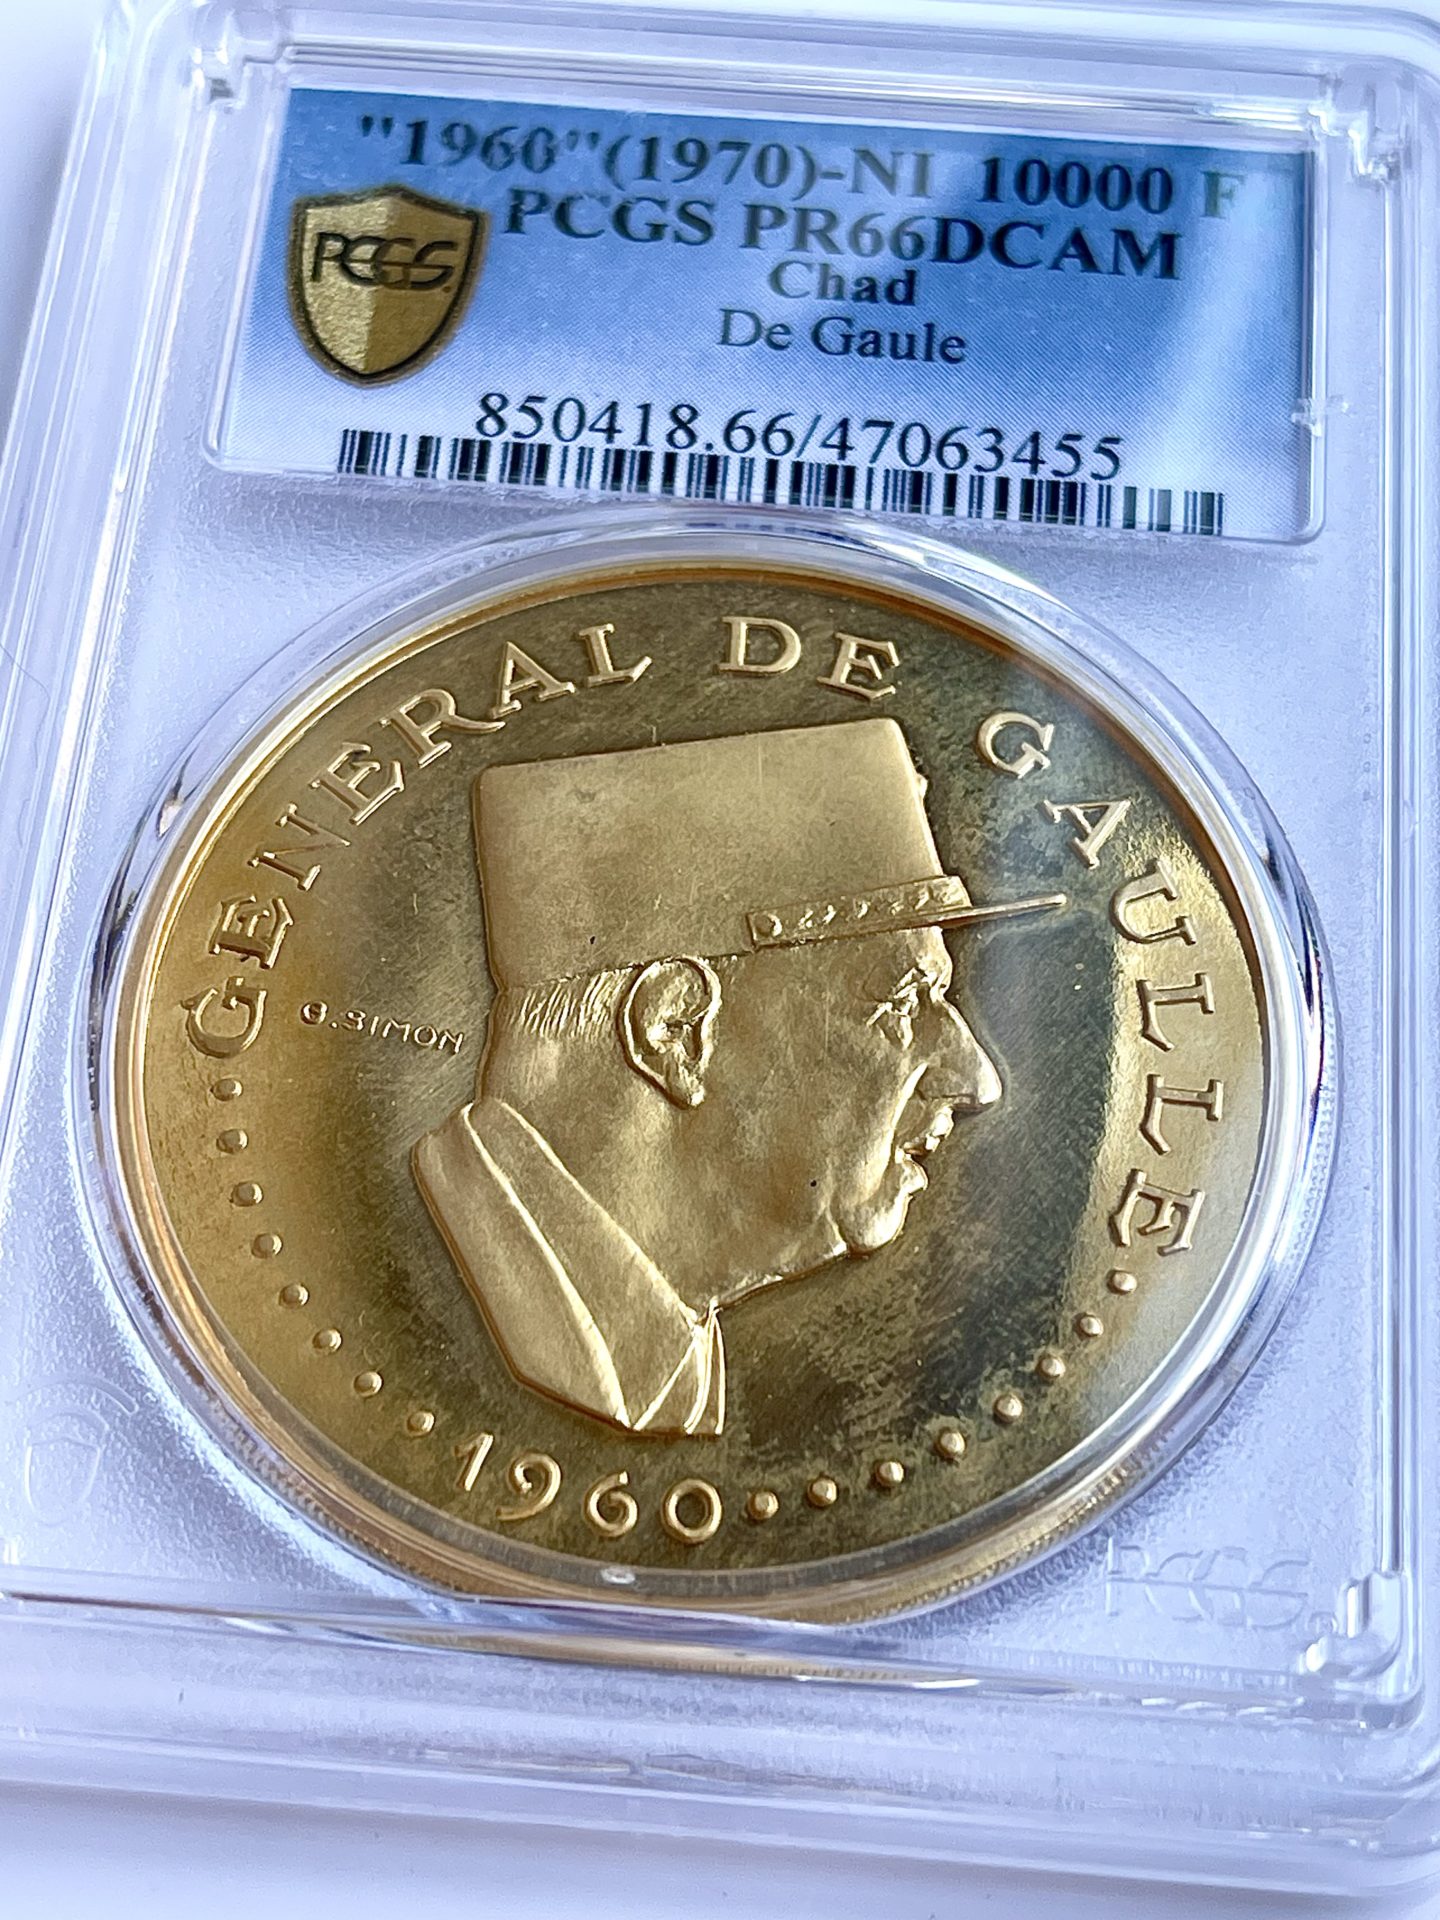 Gold korun coins. The korun coin series from Czech Republic